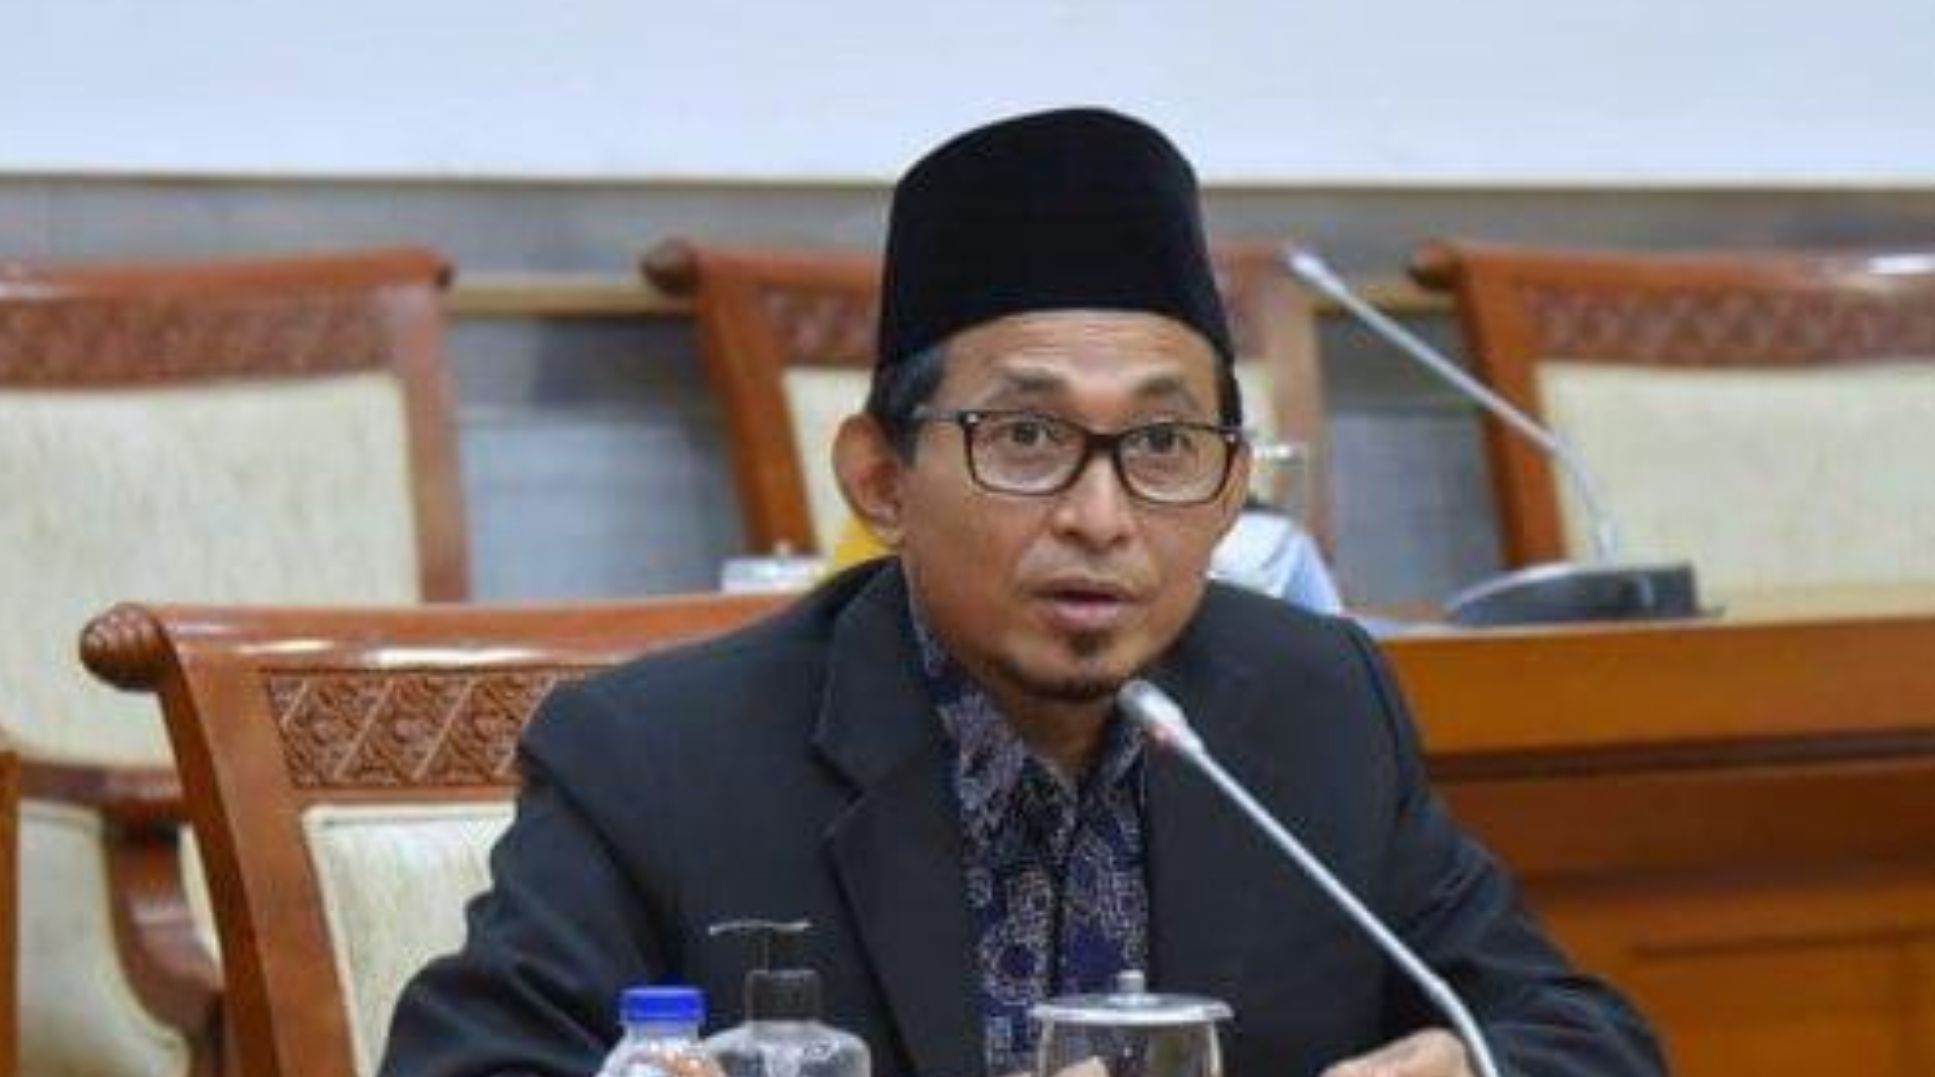 Wakil Rakyat Kritik Kemenag Soal Aturan Pengeras Suara, Bukhori Yusuf: Seolah Mengabaikan Dinamika Kondisi Sosiologis 